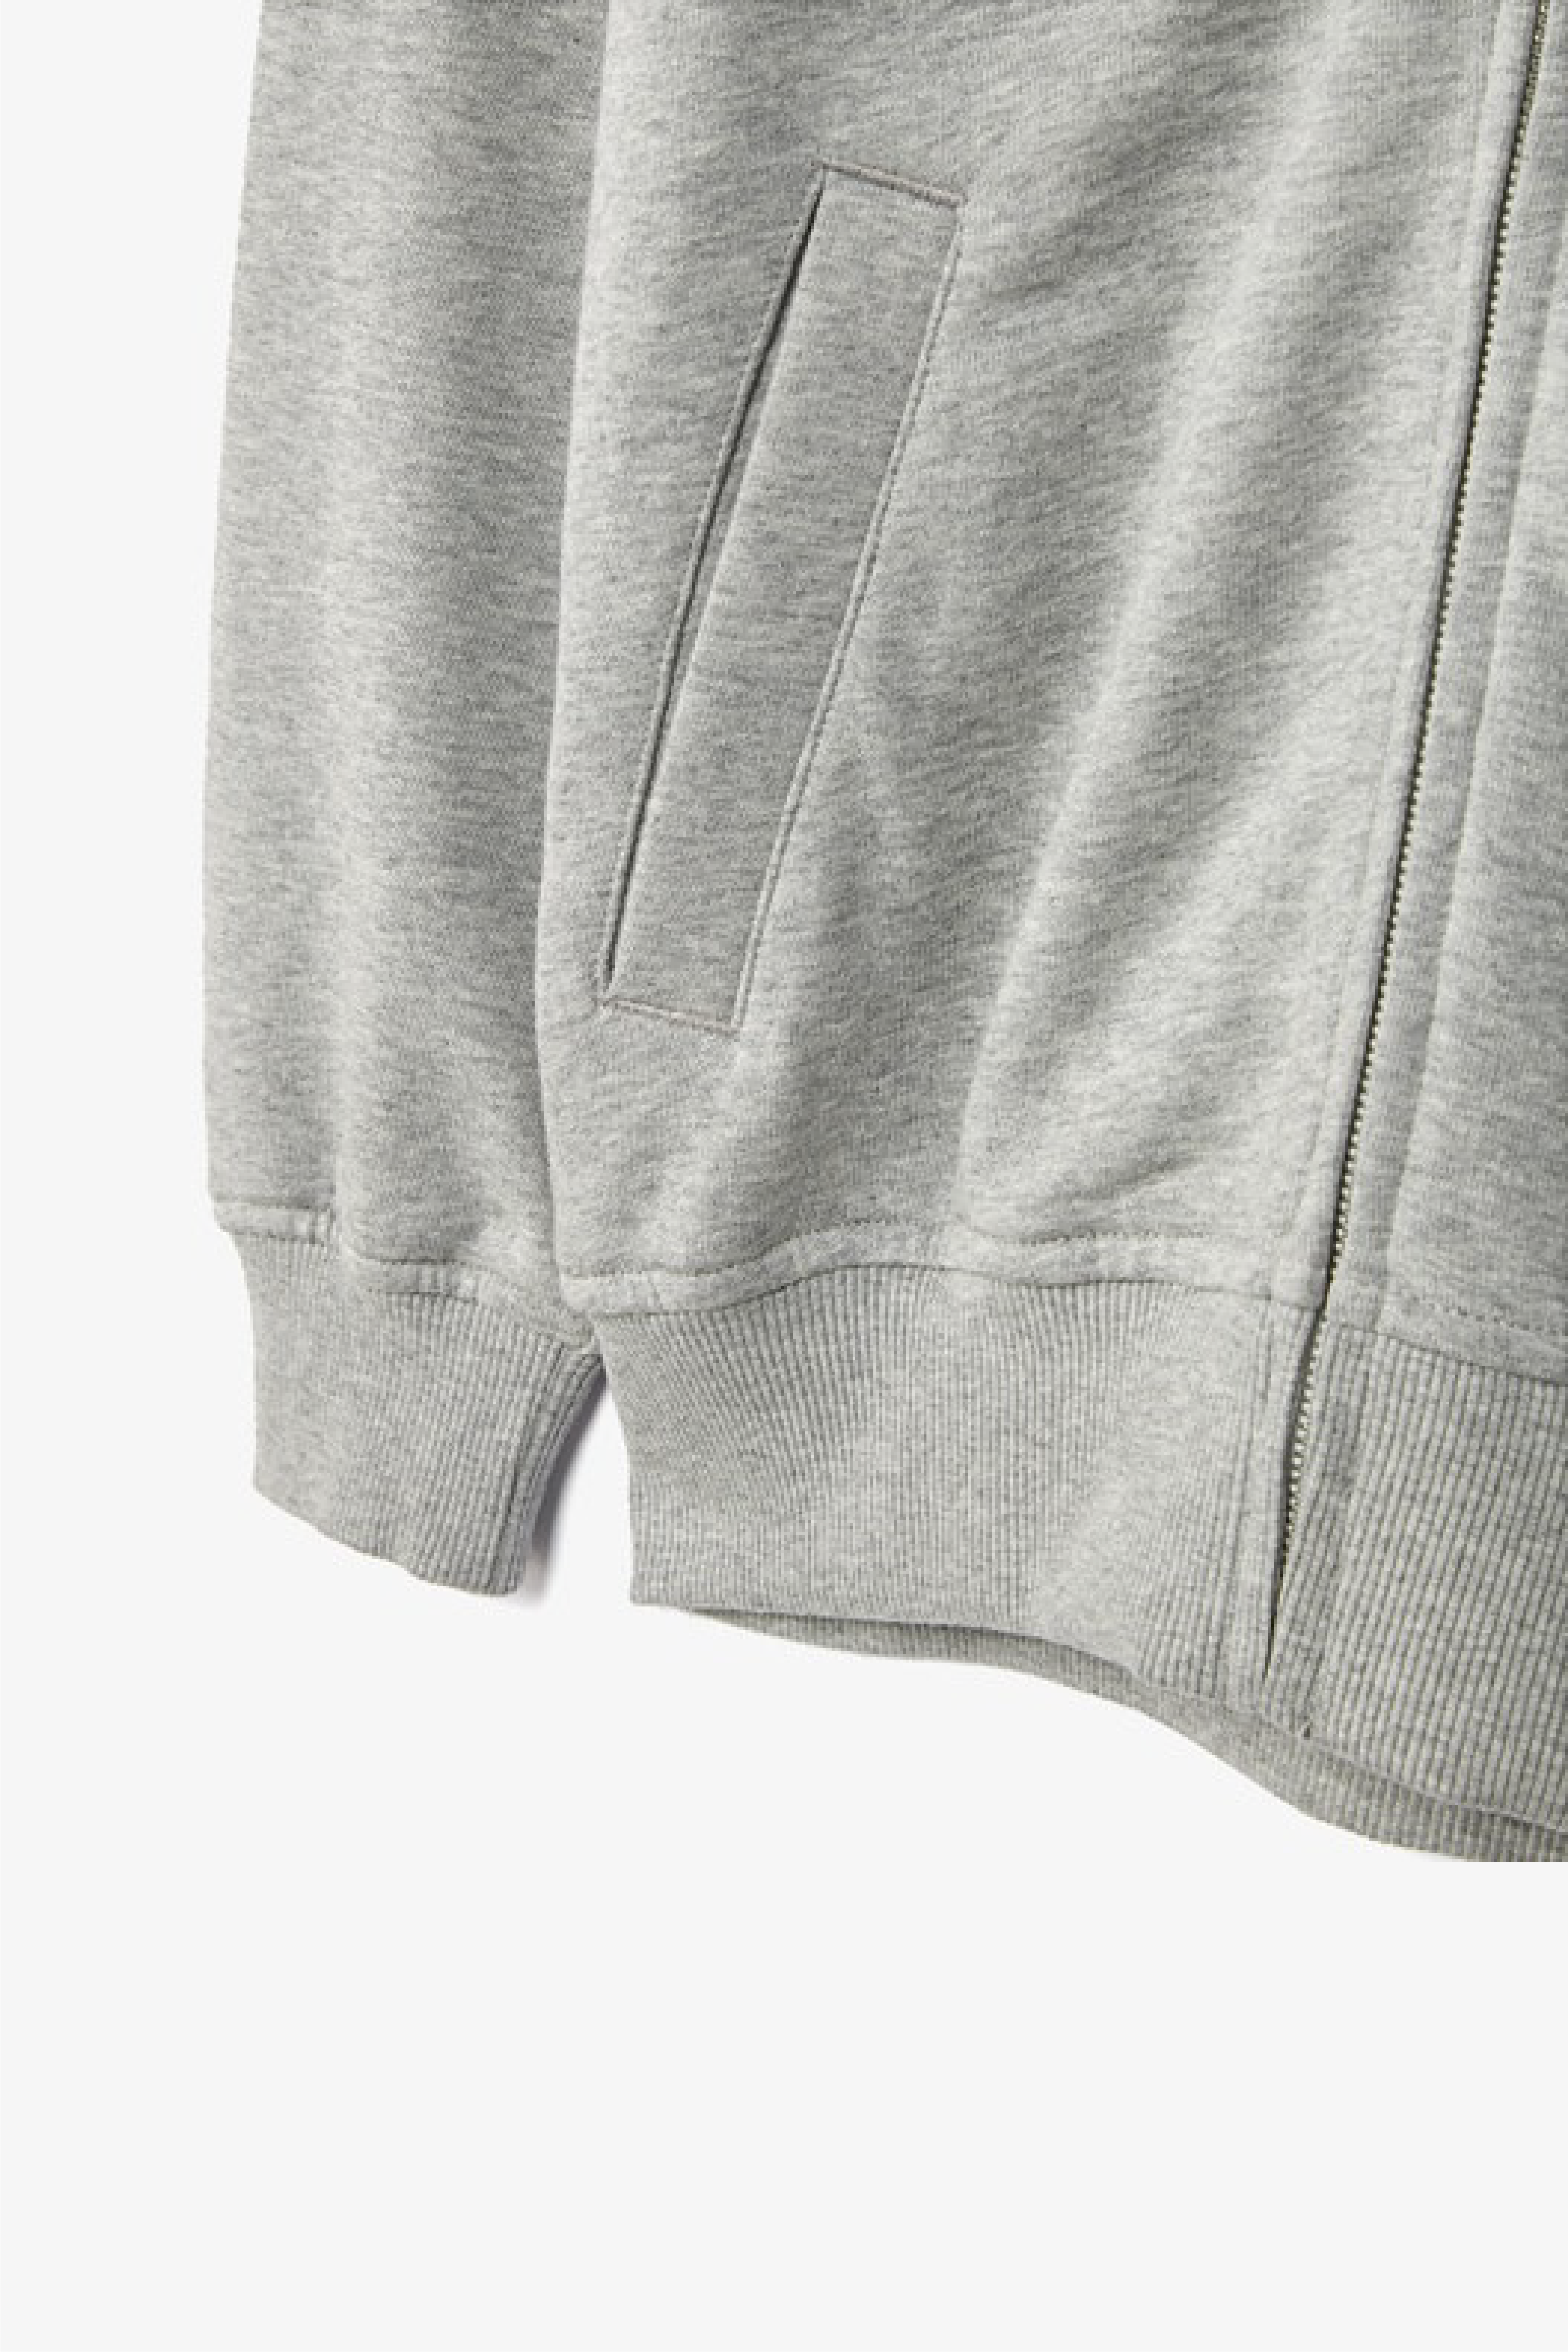 Selectshop FRAME - COMME DES GARCONS SHIRT Men's Jacket Outerwear Dubai